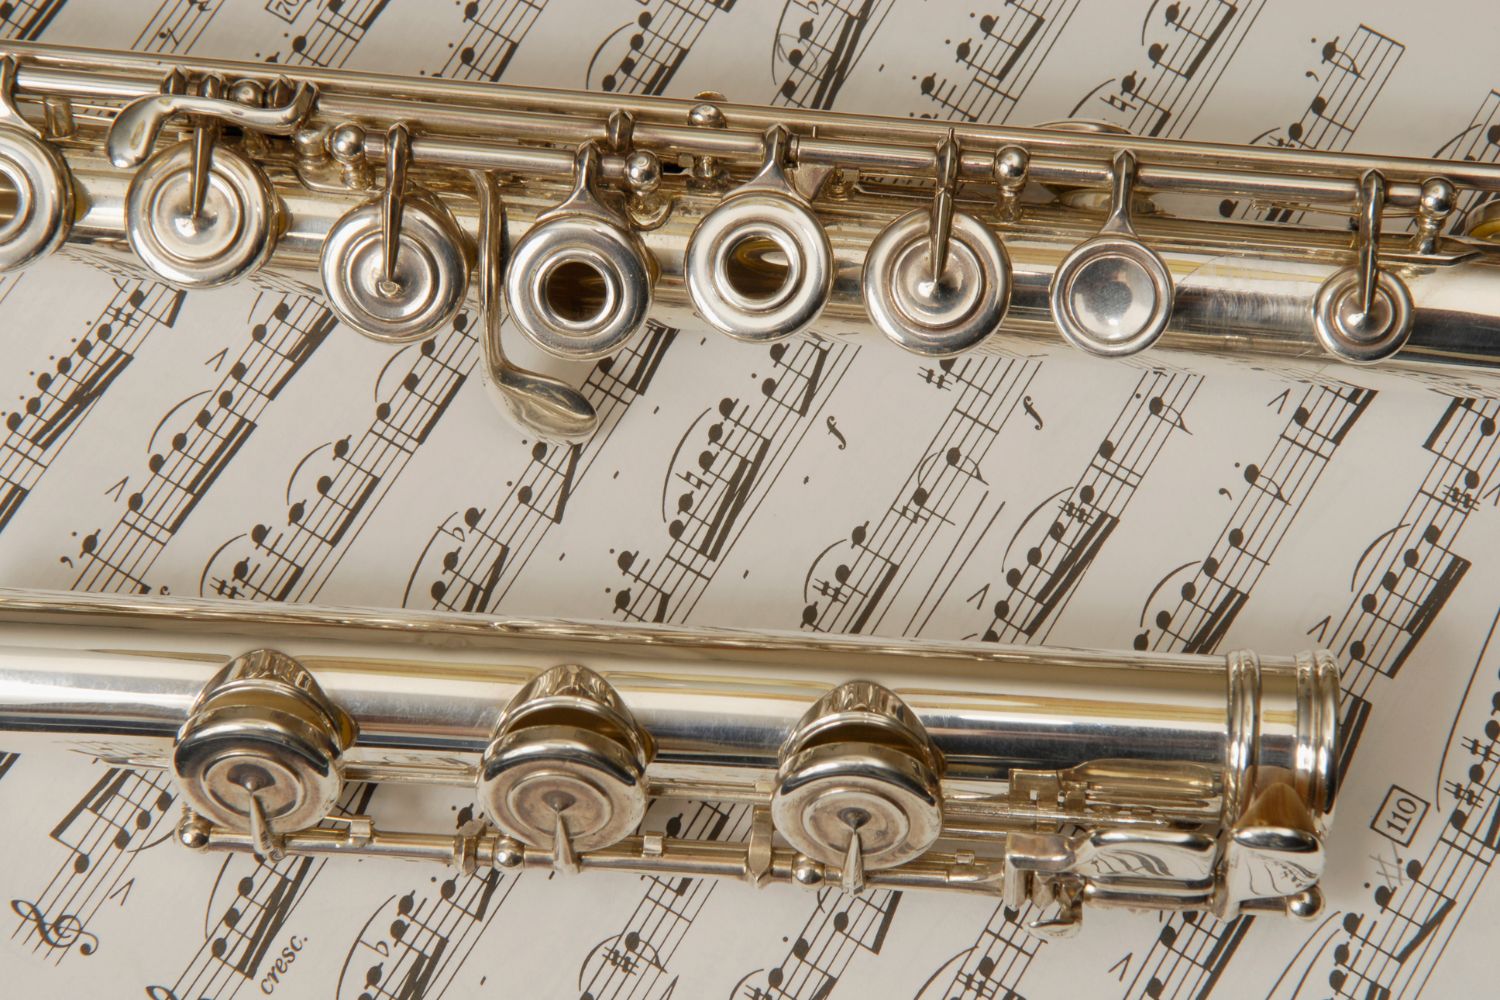 piccolo vs flute